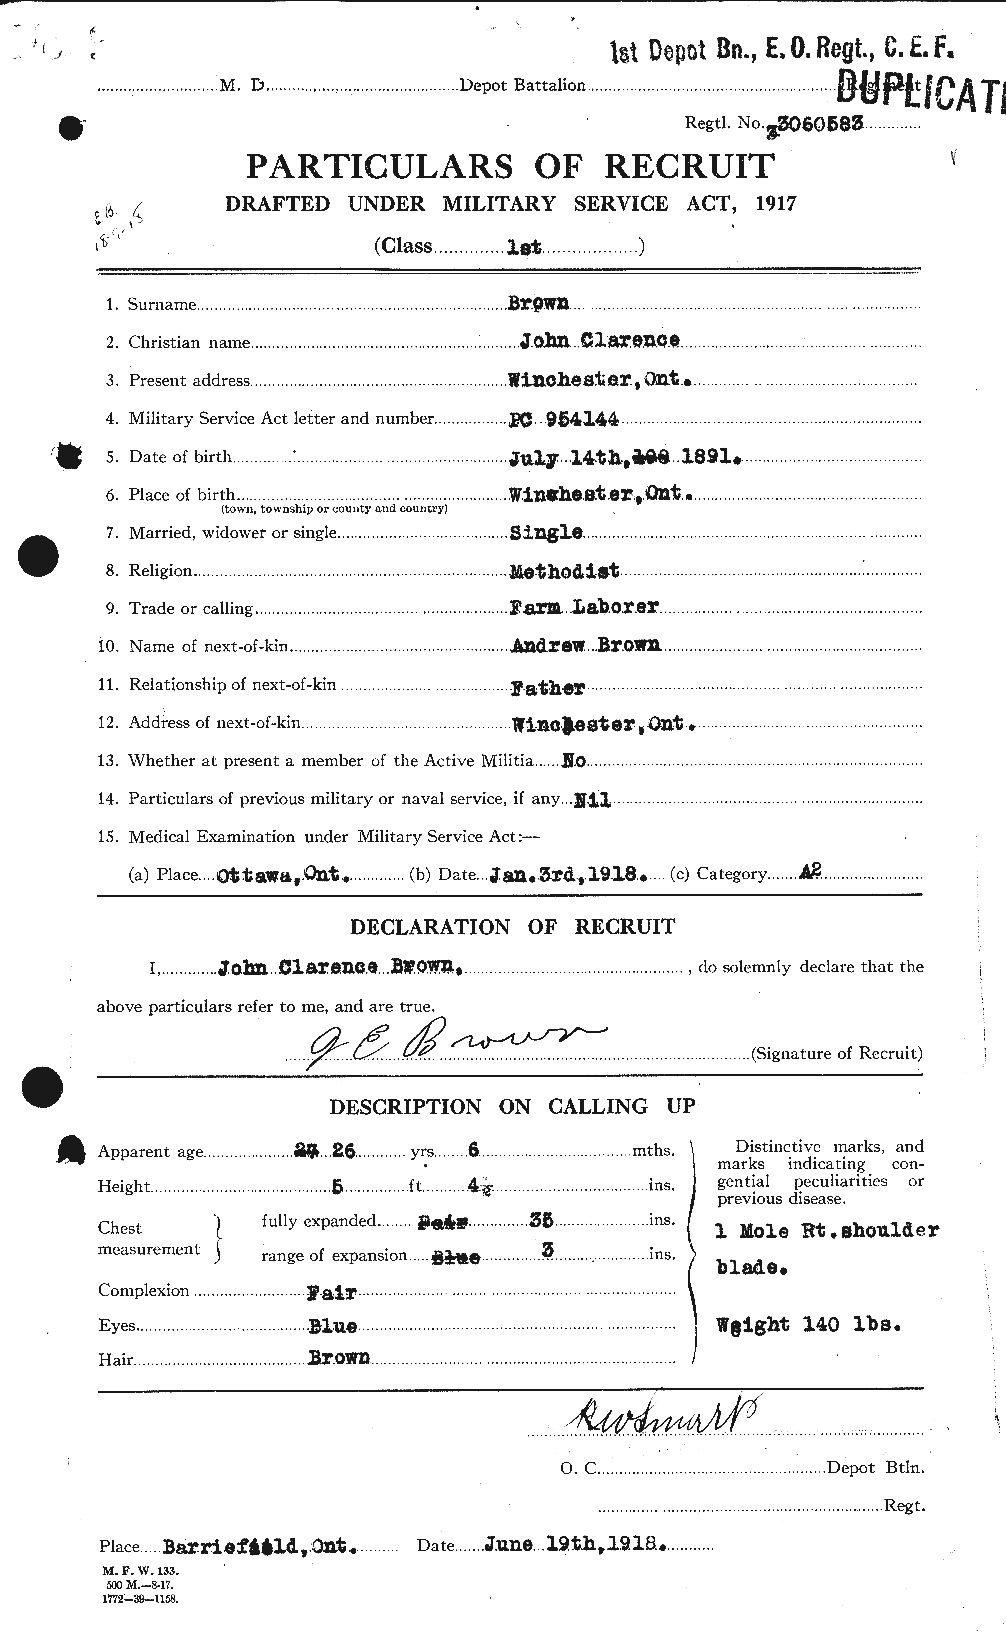 Dossiers du Personnel de la Première Guerre mondiale - CEC 264579a